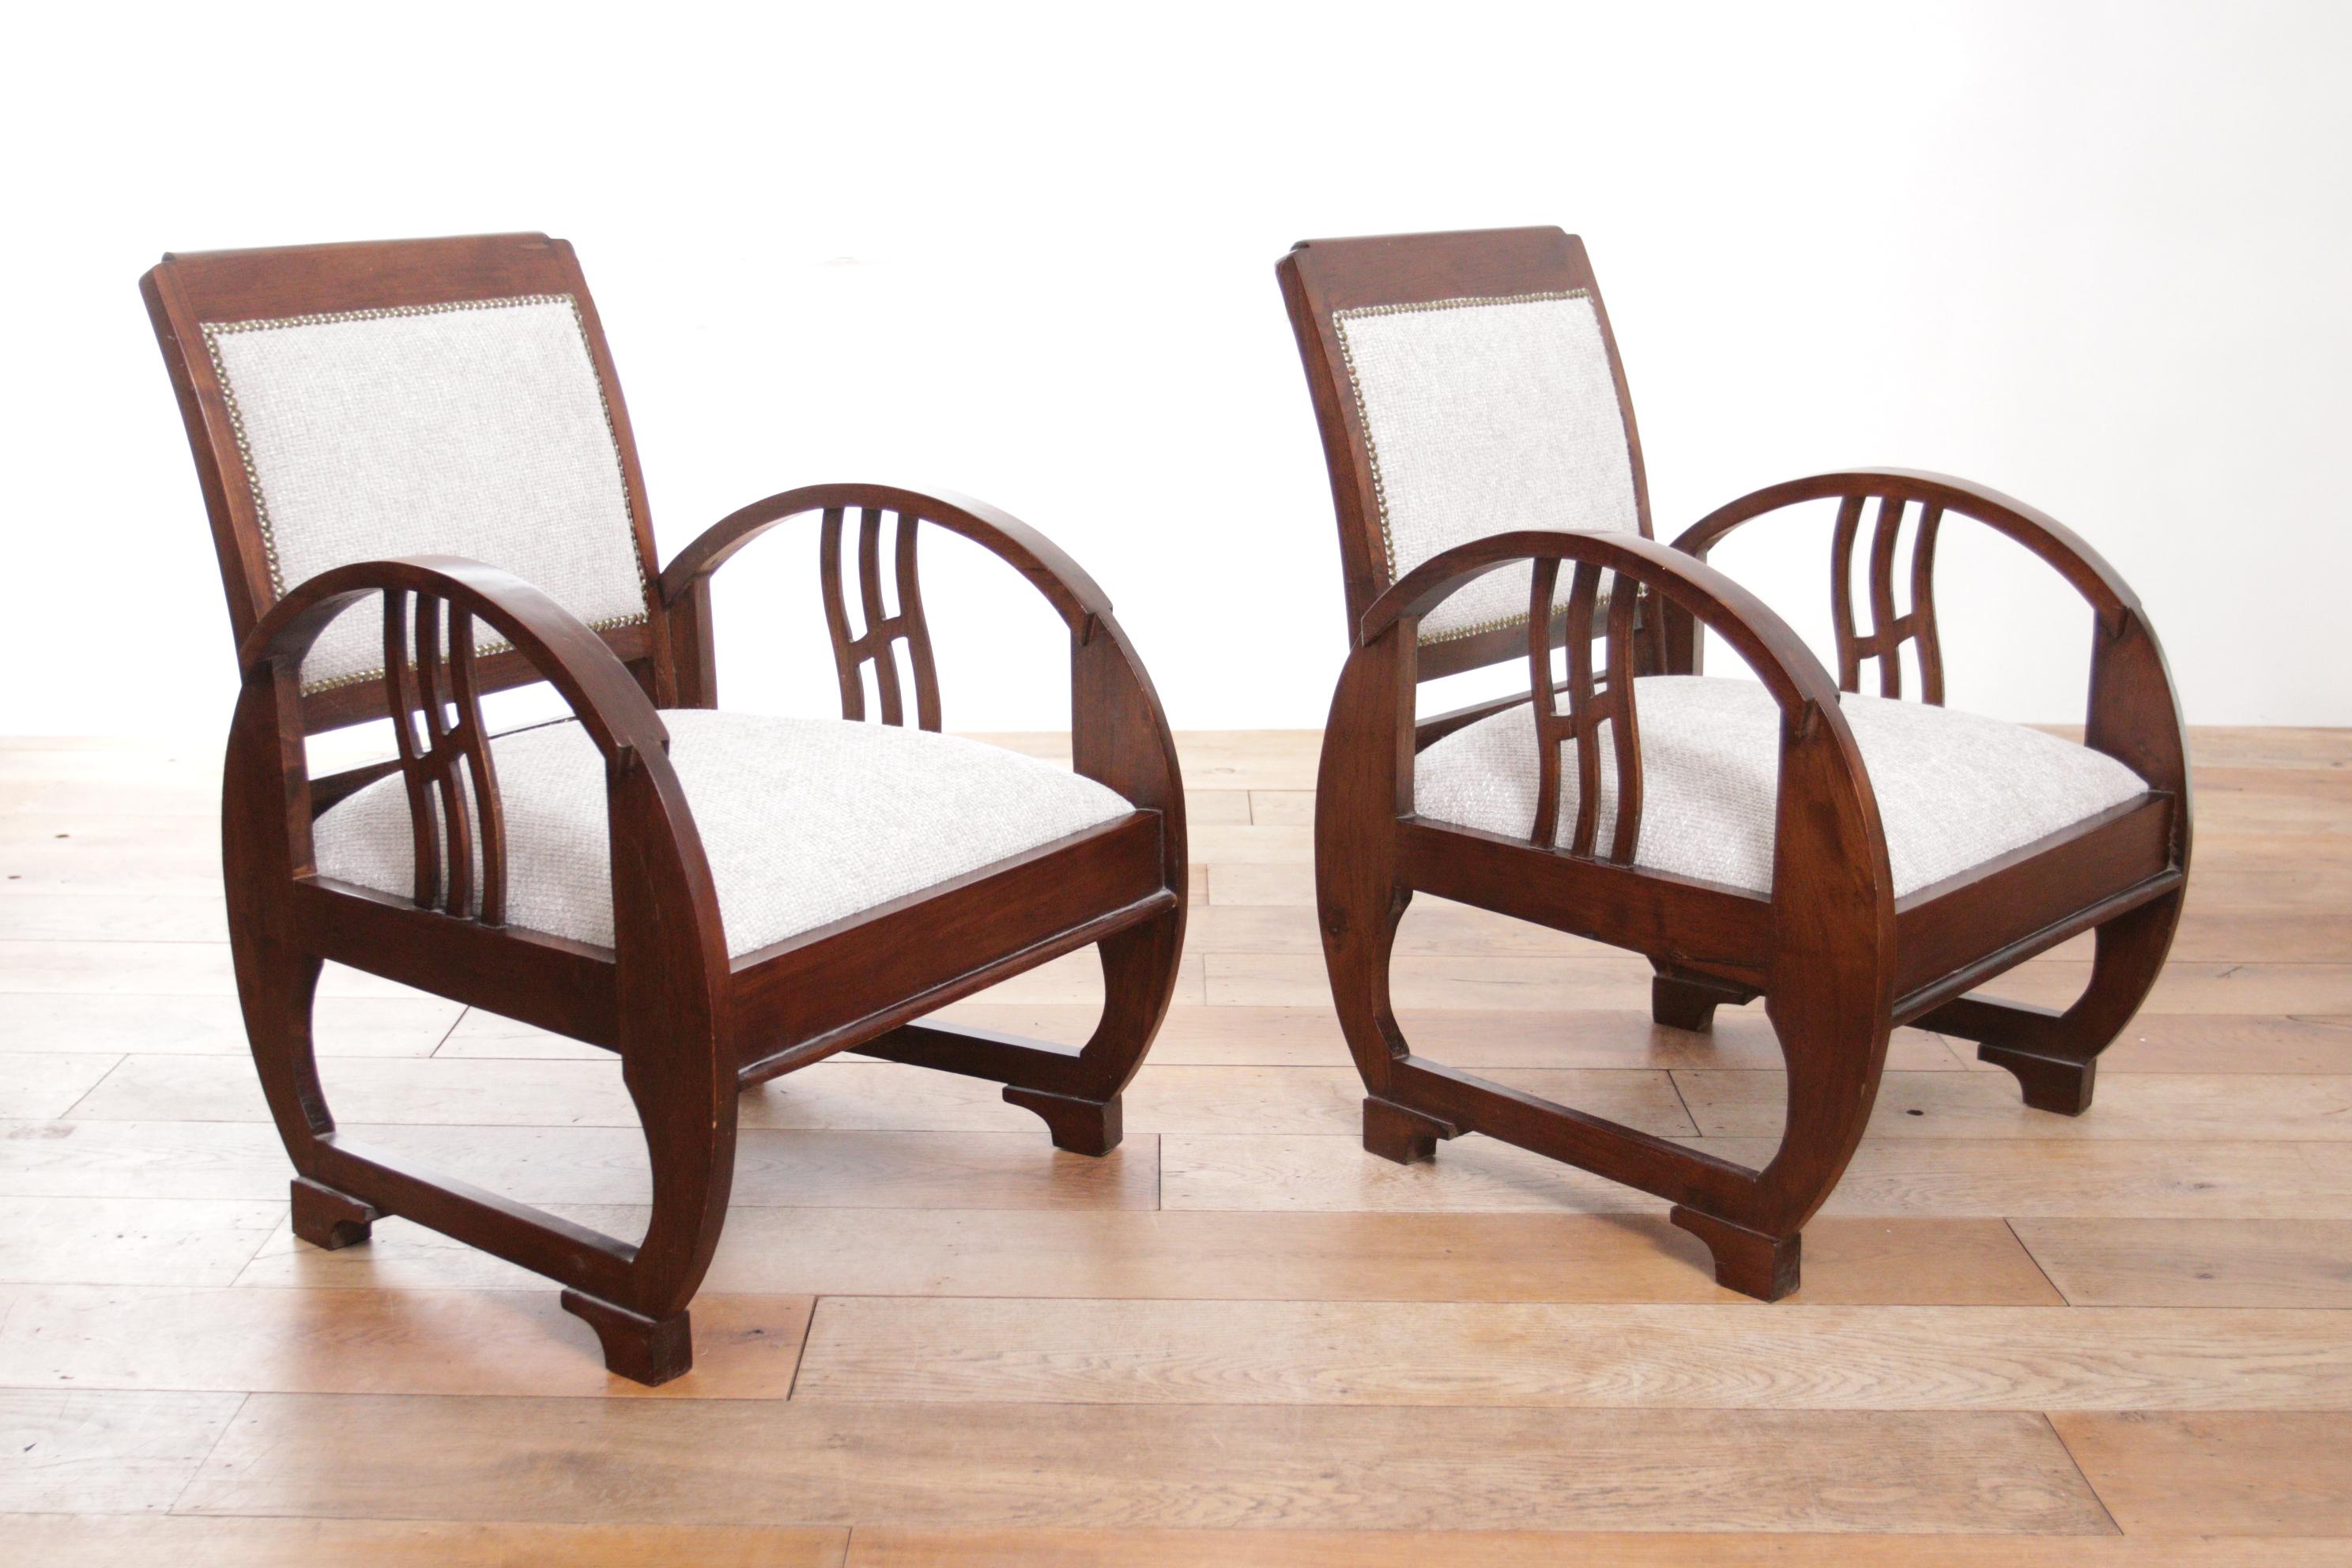 Wenn Sie auf der Suche nach einem Paar eleganter und bequemer Stühle sind, um Ihrem Wohnzimmer Charme und Stil zu verleihen, sollten Sie diese beiden exklusiven französischen Holzsessel im Art-Deco-Stil in Betracht ziehen. 
Diese Stühle wurden um